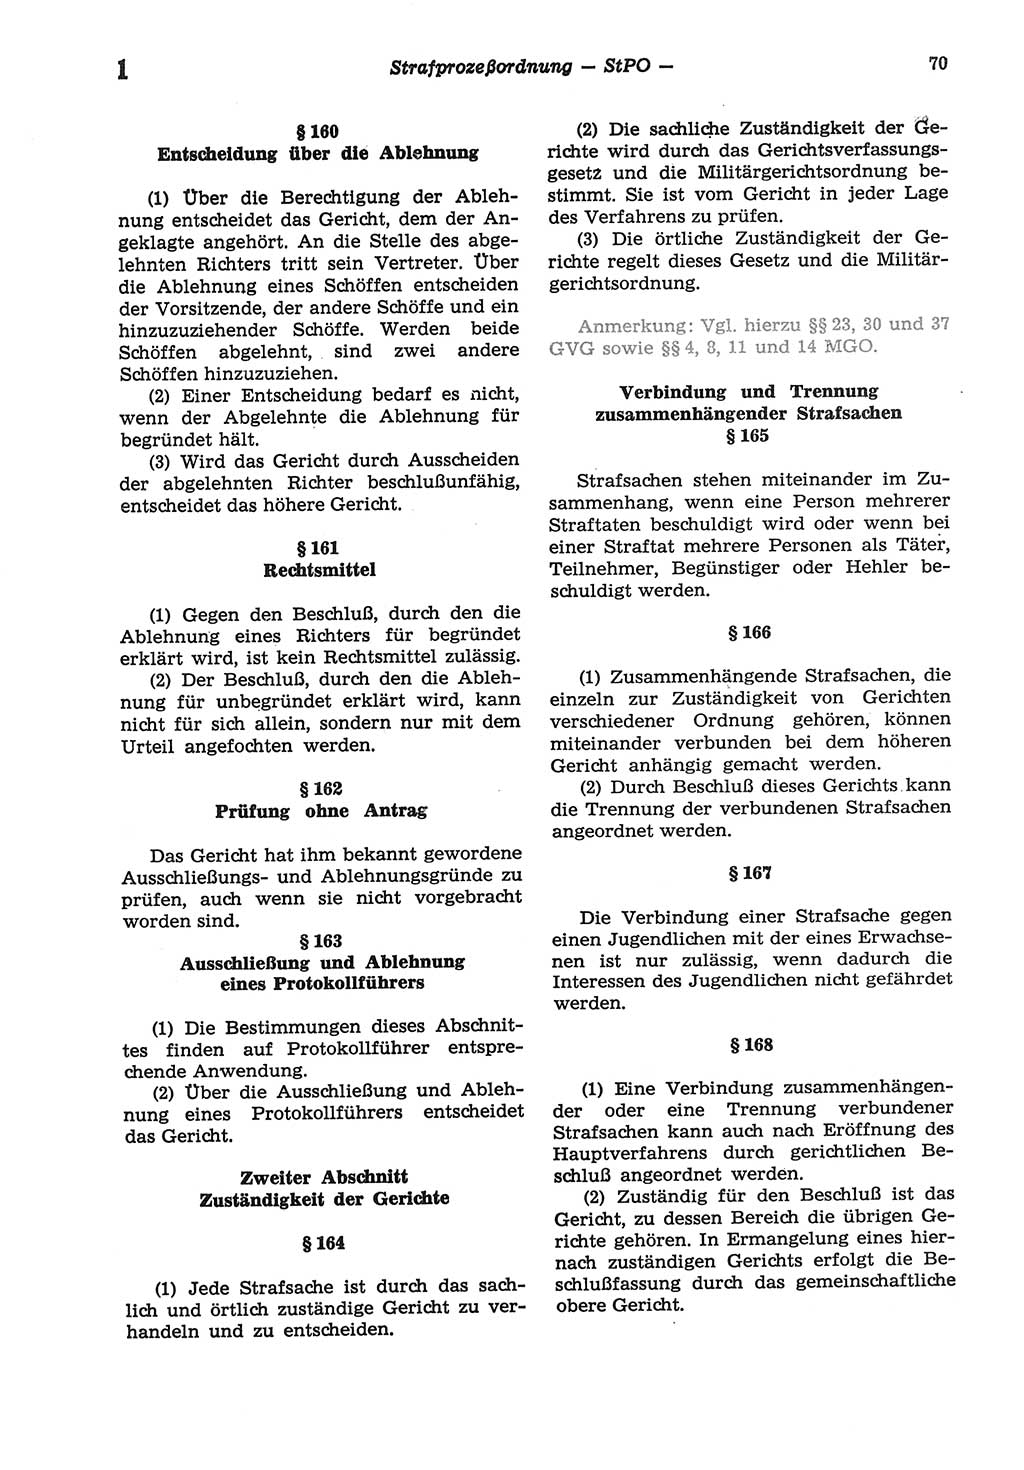 Strafprozeßordnung (StPO) der Deutschen Demokratischen Republik (DDR) sowie angrenzende Gesetze und Bestimmungen 1977, Seite 70 (StPO DDR Ges. Best. 1977, S. 70)